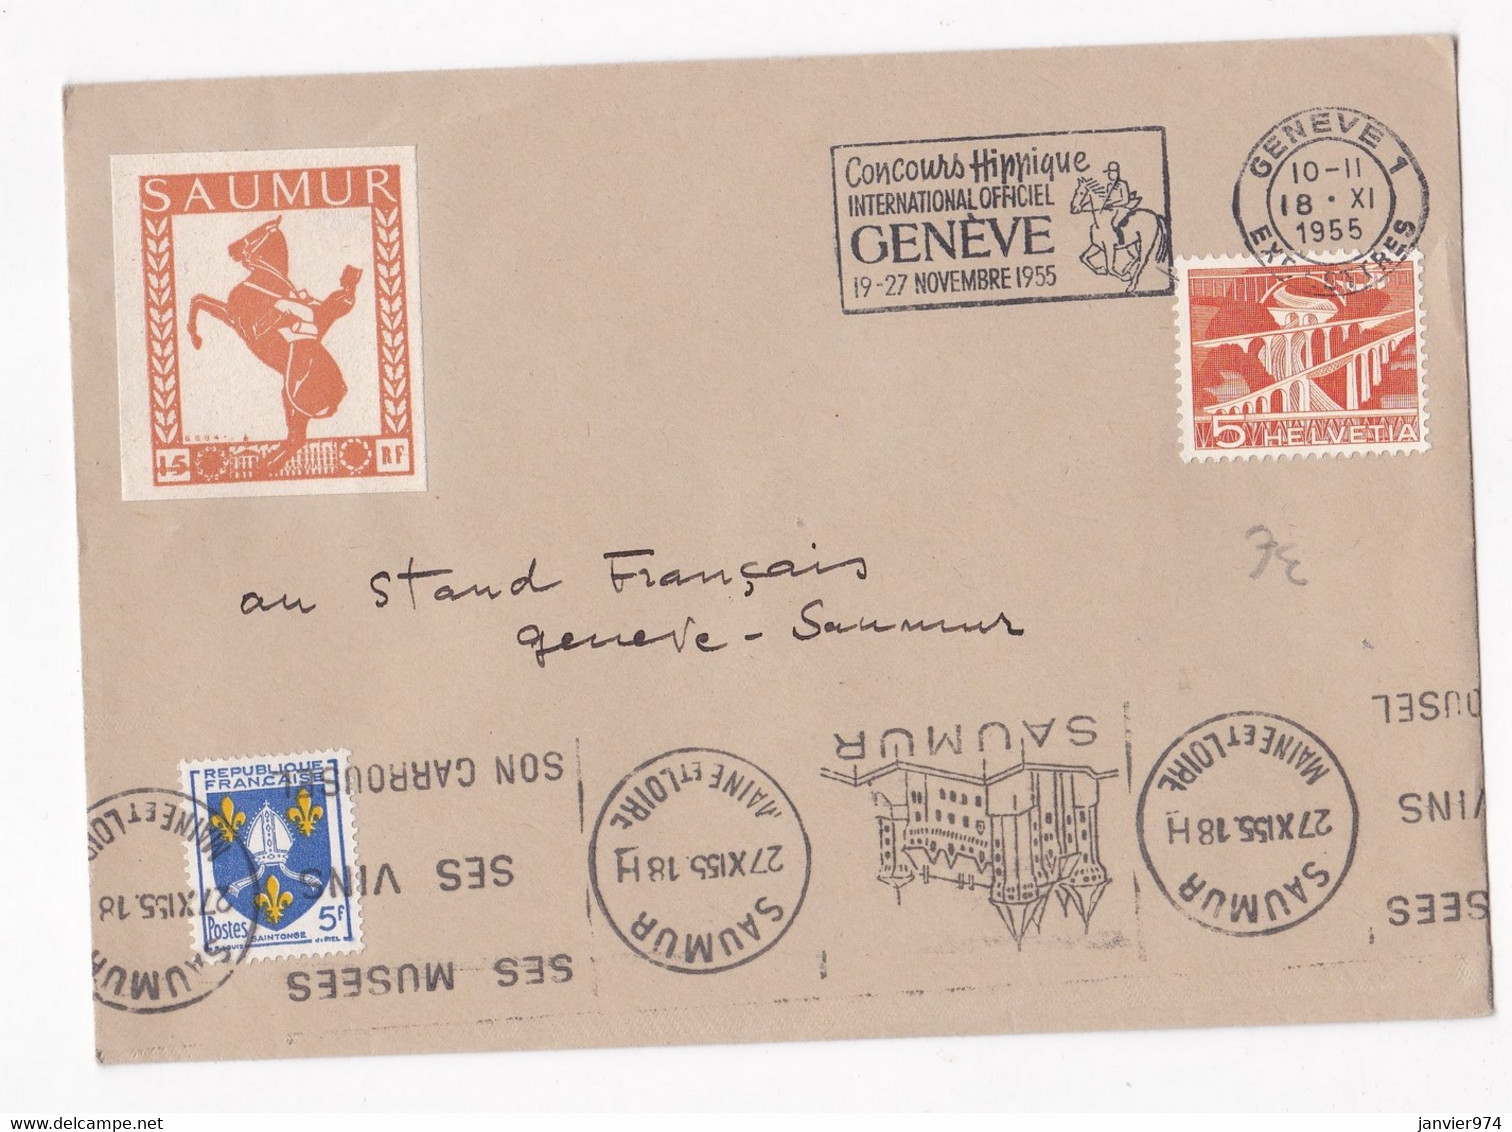 Enveloppe Affranchissement France Suisse 1955 Concours Hippique De Genève. Vignette Saumur. - Horses